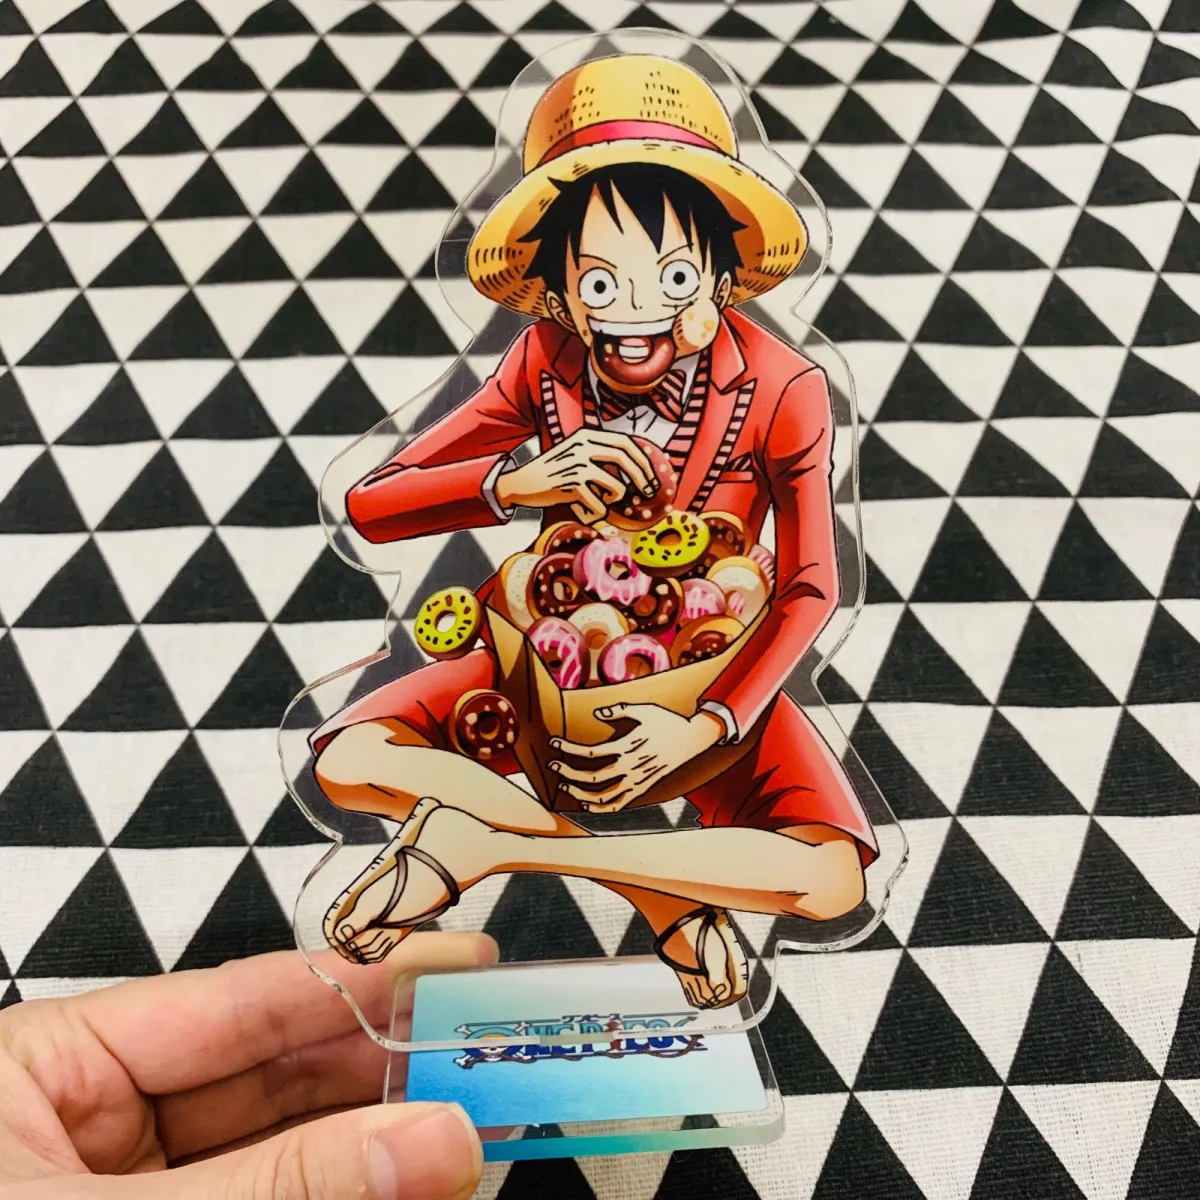 Sở hữu ngay một mô hình nhân vật One Piece để cảm nhận sự sống động của hình ảnh này. Với nhiều chi tiết tinh xảo, mô hình nhân vật One Piece là một sản phẩm tuyệt vời cho người hâm mộ.